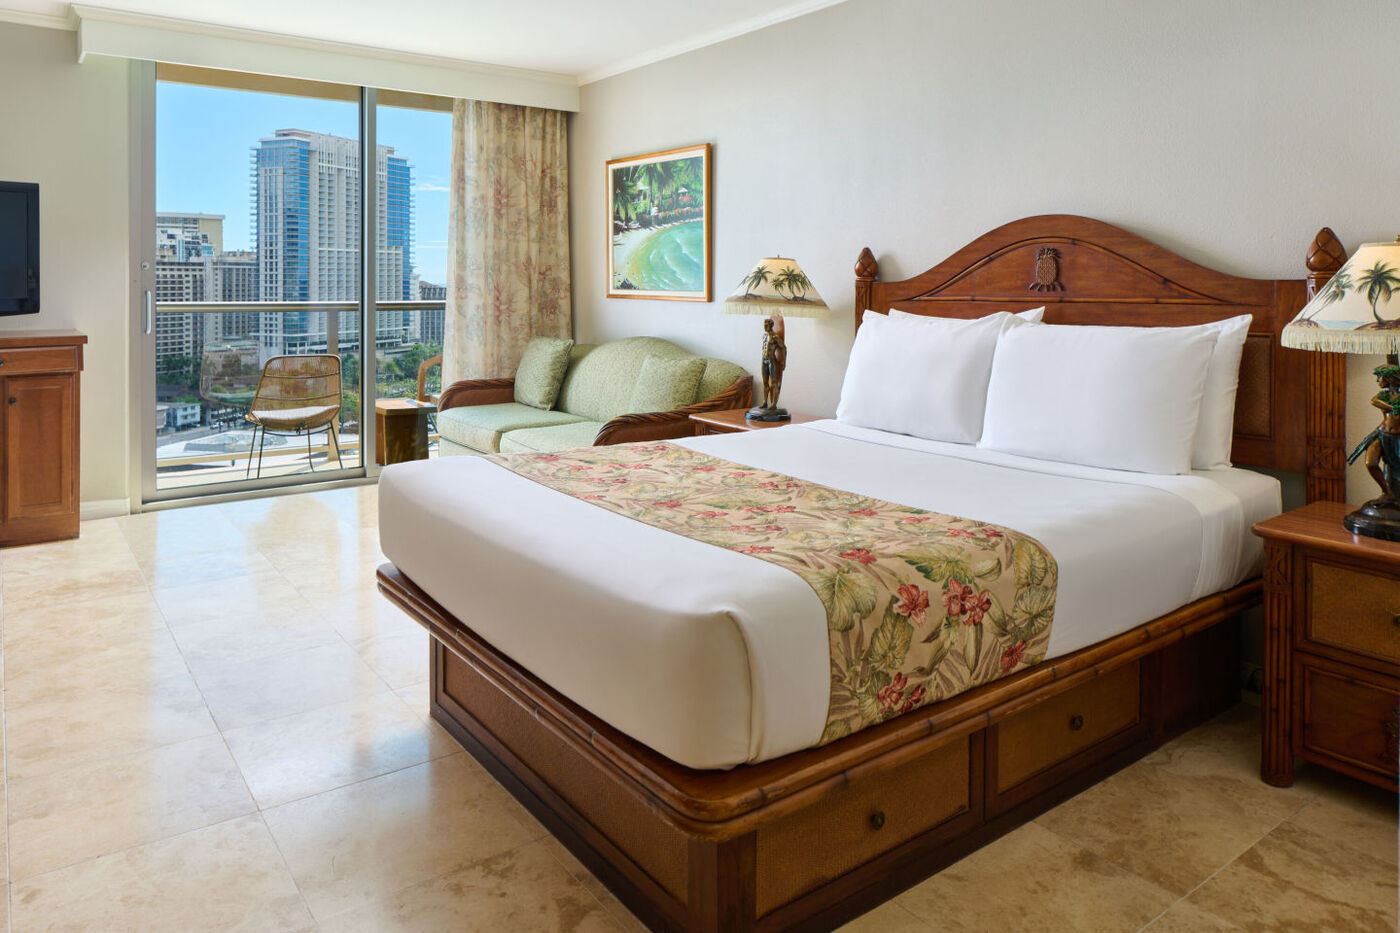 Luana-Waikiki-Hotel-and-Suites_Studio-View-Full-Bedroom-Shot_1440x960.jpg